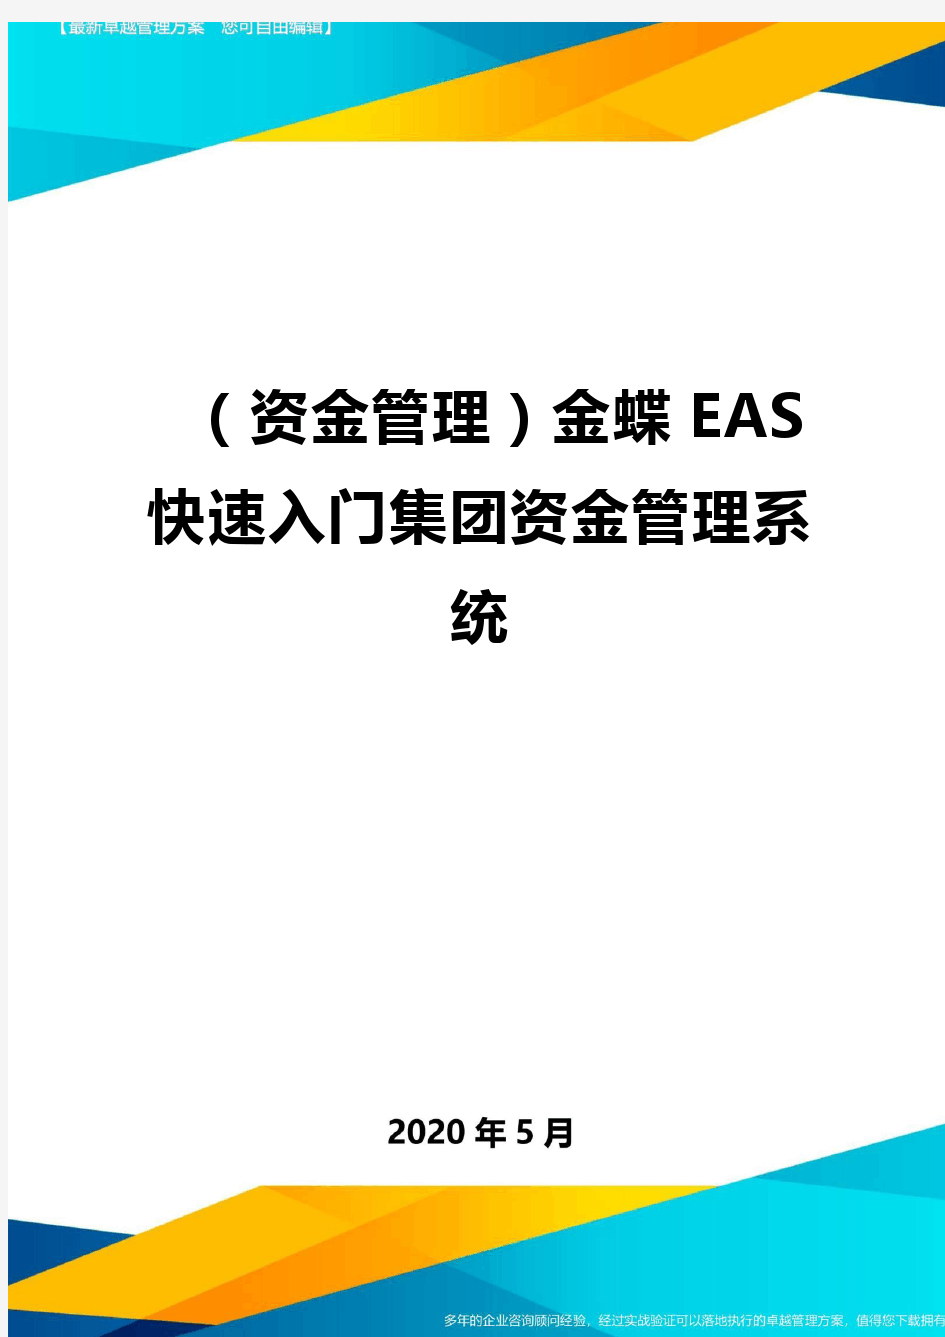 (资金管理)金蝶EAS快速入门集团资金管理系统